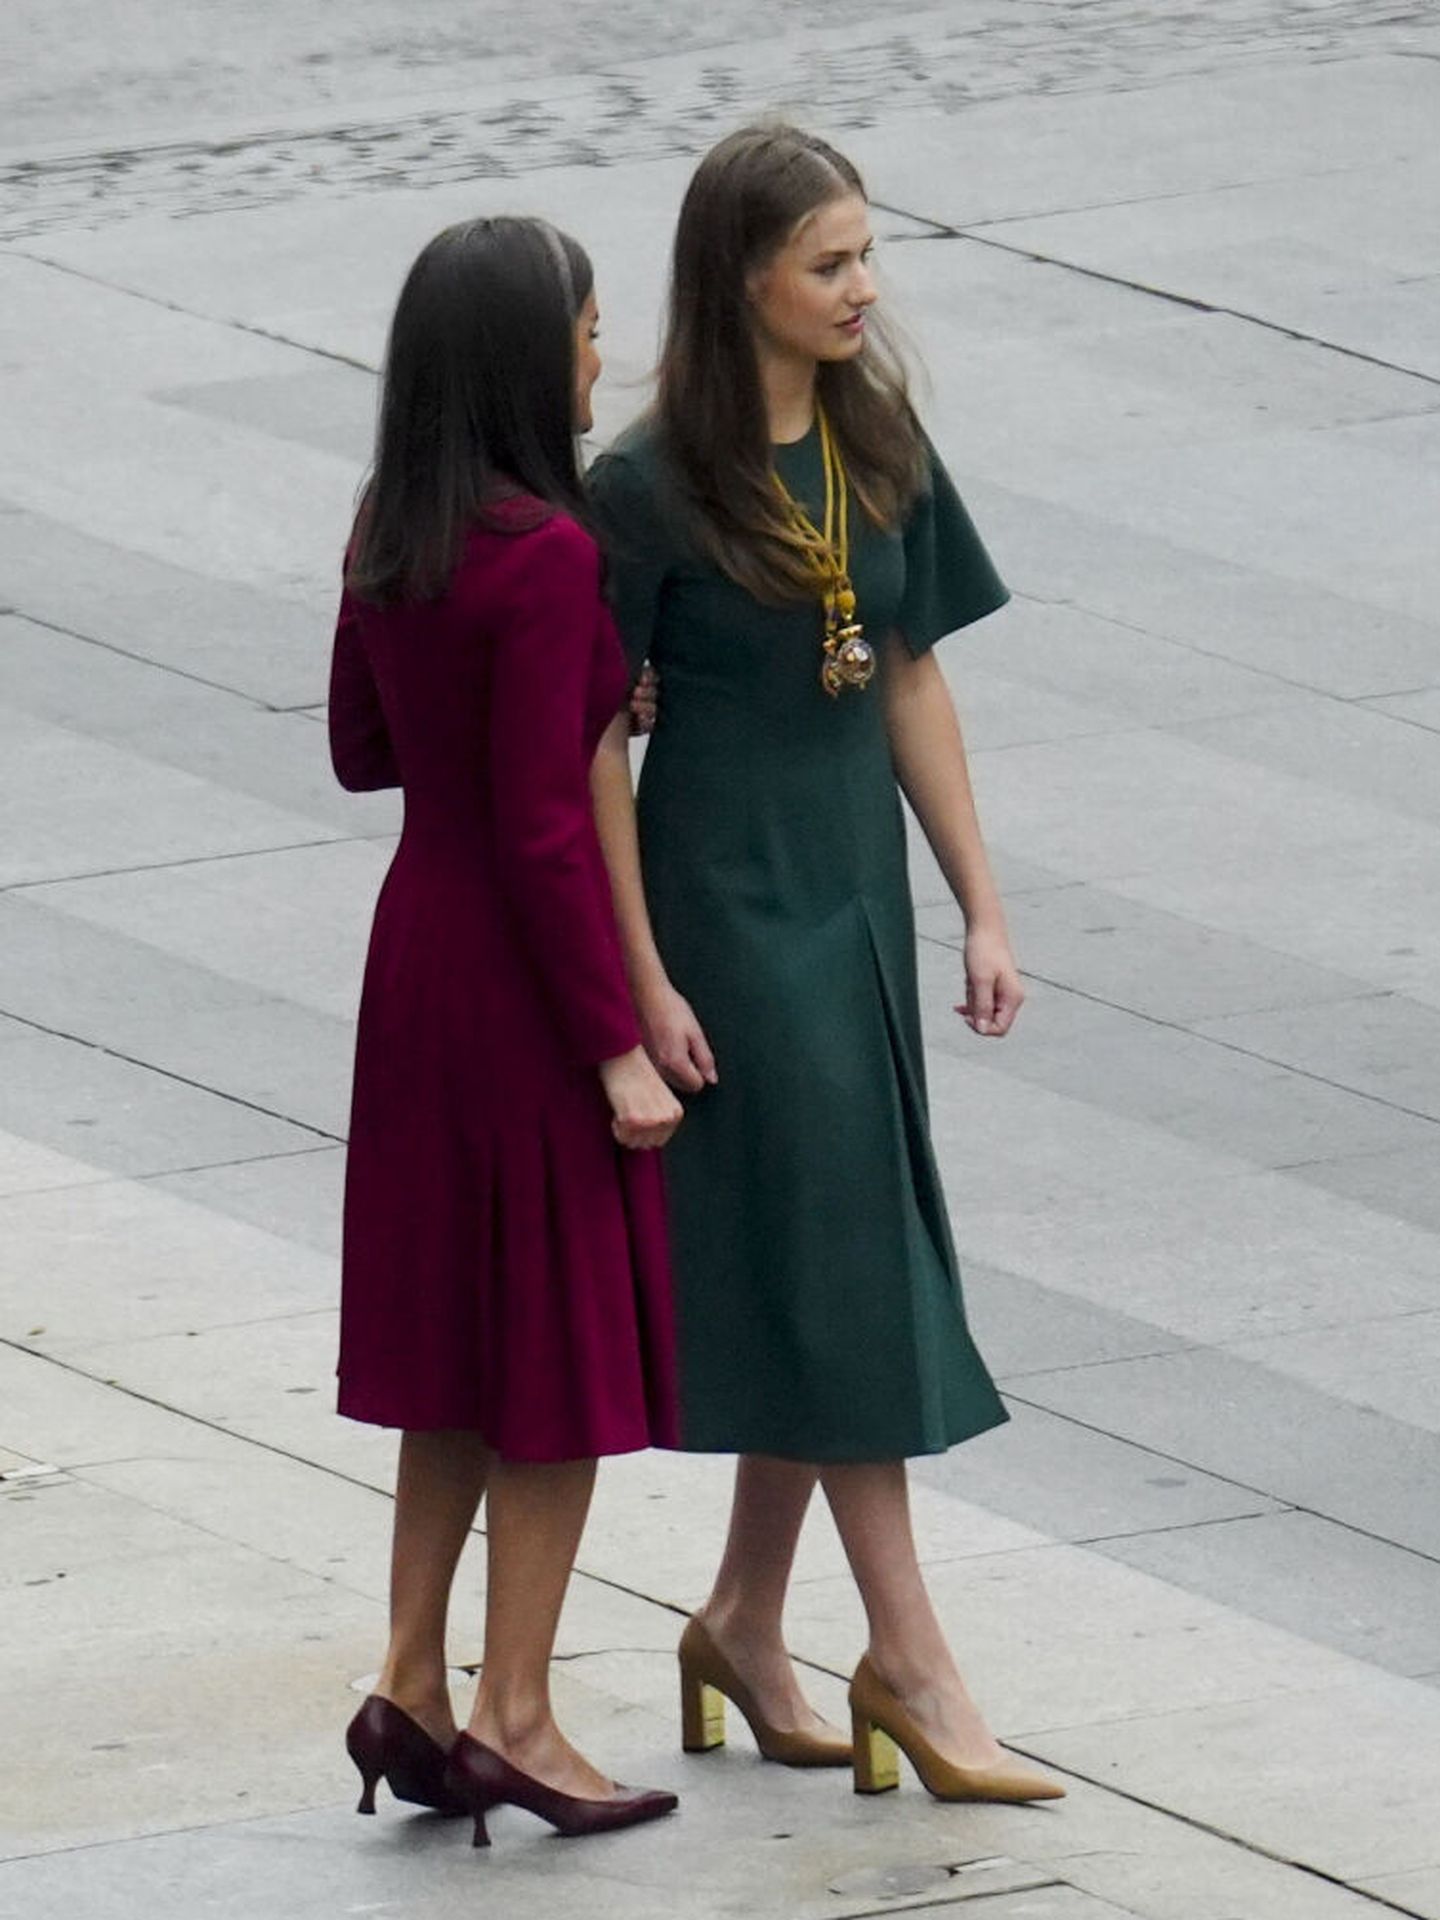 La reina Letizia, junto a la princesa Leonor, en las Cortes el pasado mes de noviembre con unos zapatos de tacón bajo. (Europa Press)